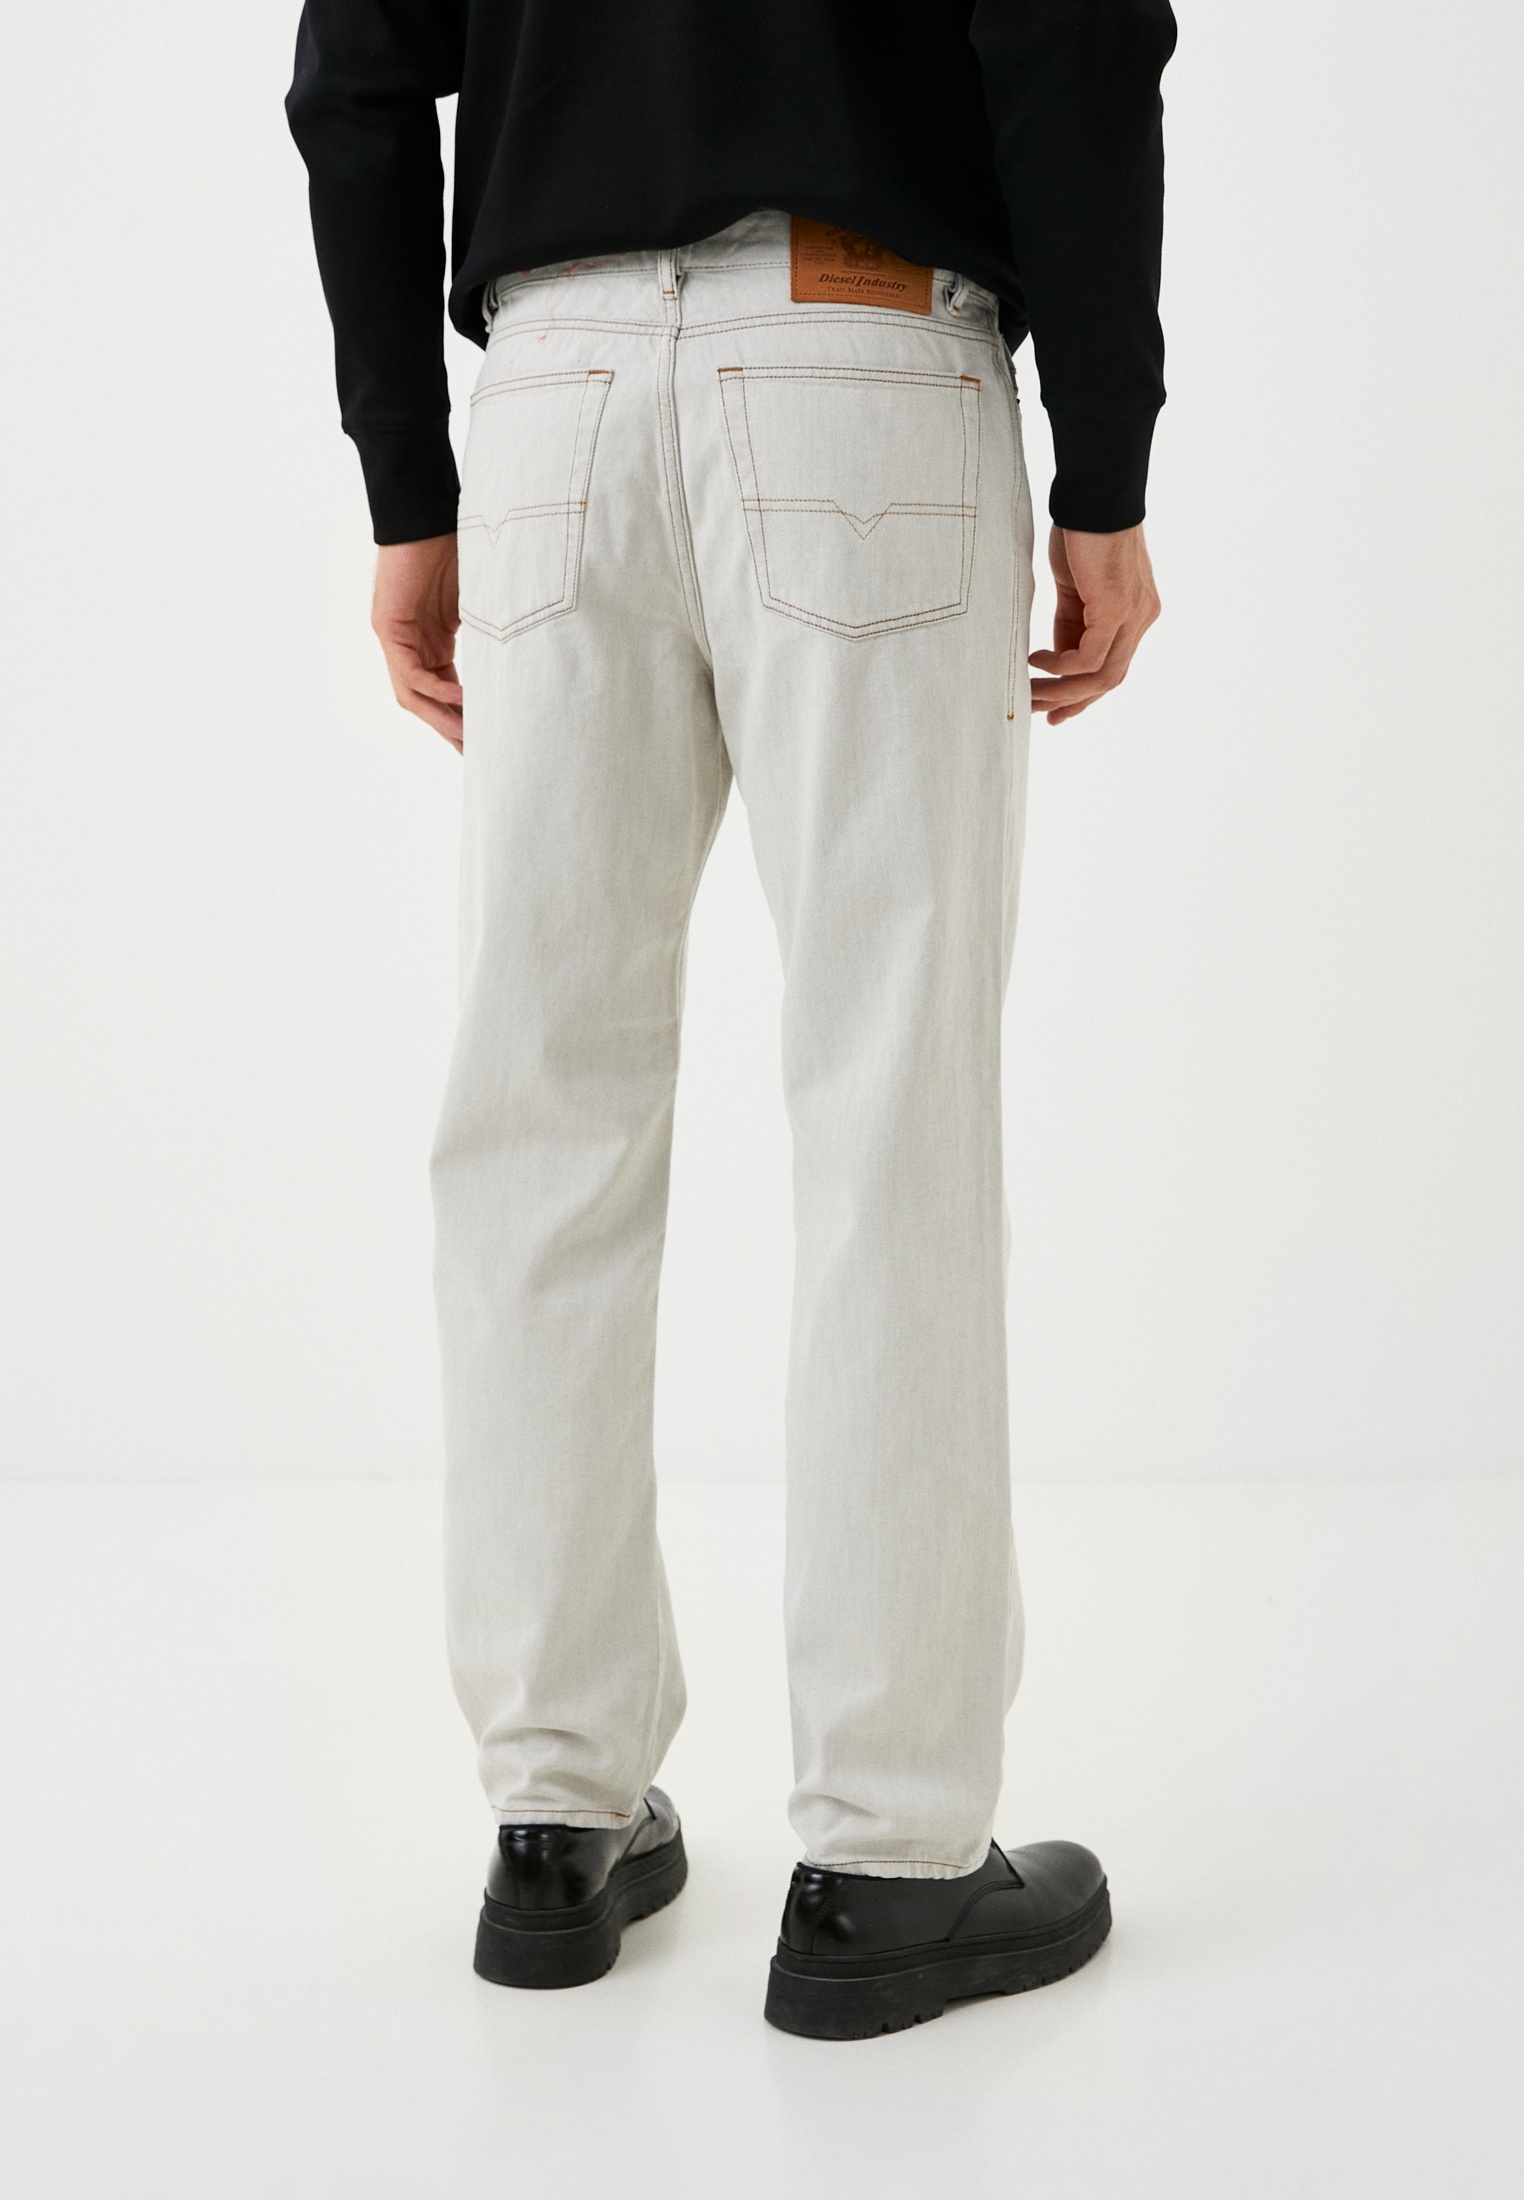 Мужские прямые джинсы Diesel (Дизель) A0434709B93: изображение 3